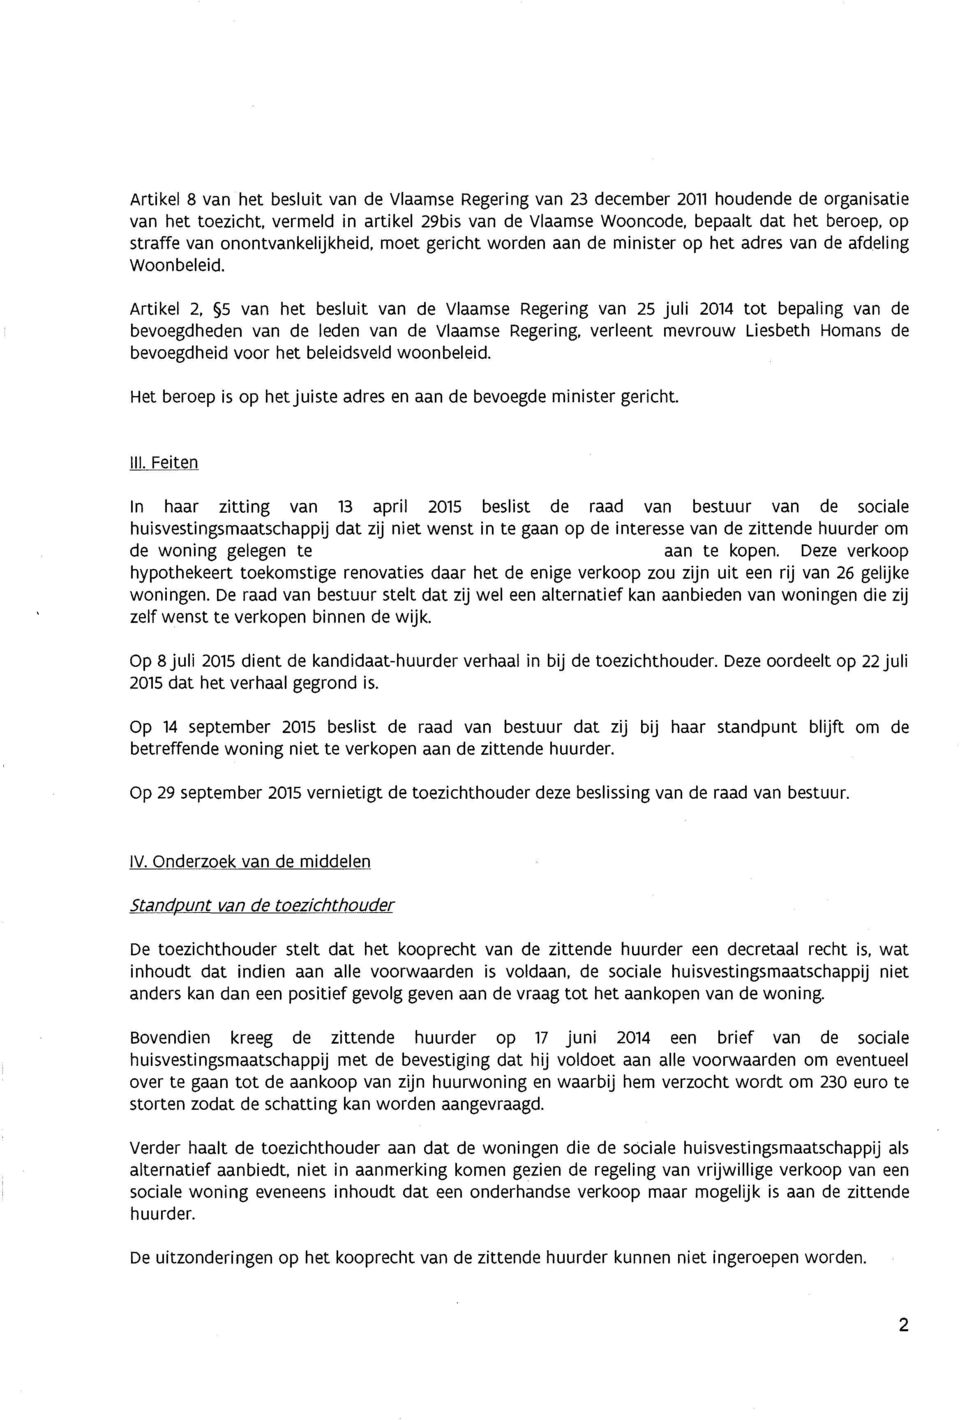 5 van het besluit van de Vlaamse Regering van 25 juli 2014 tot bepaling van de bevoegdheden van de leden van de Vlaamse Regering.